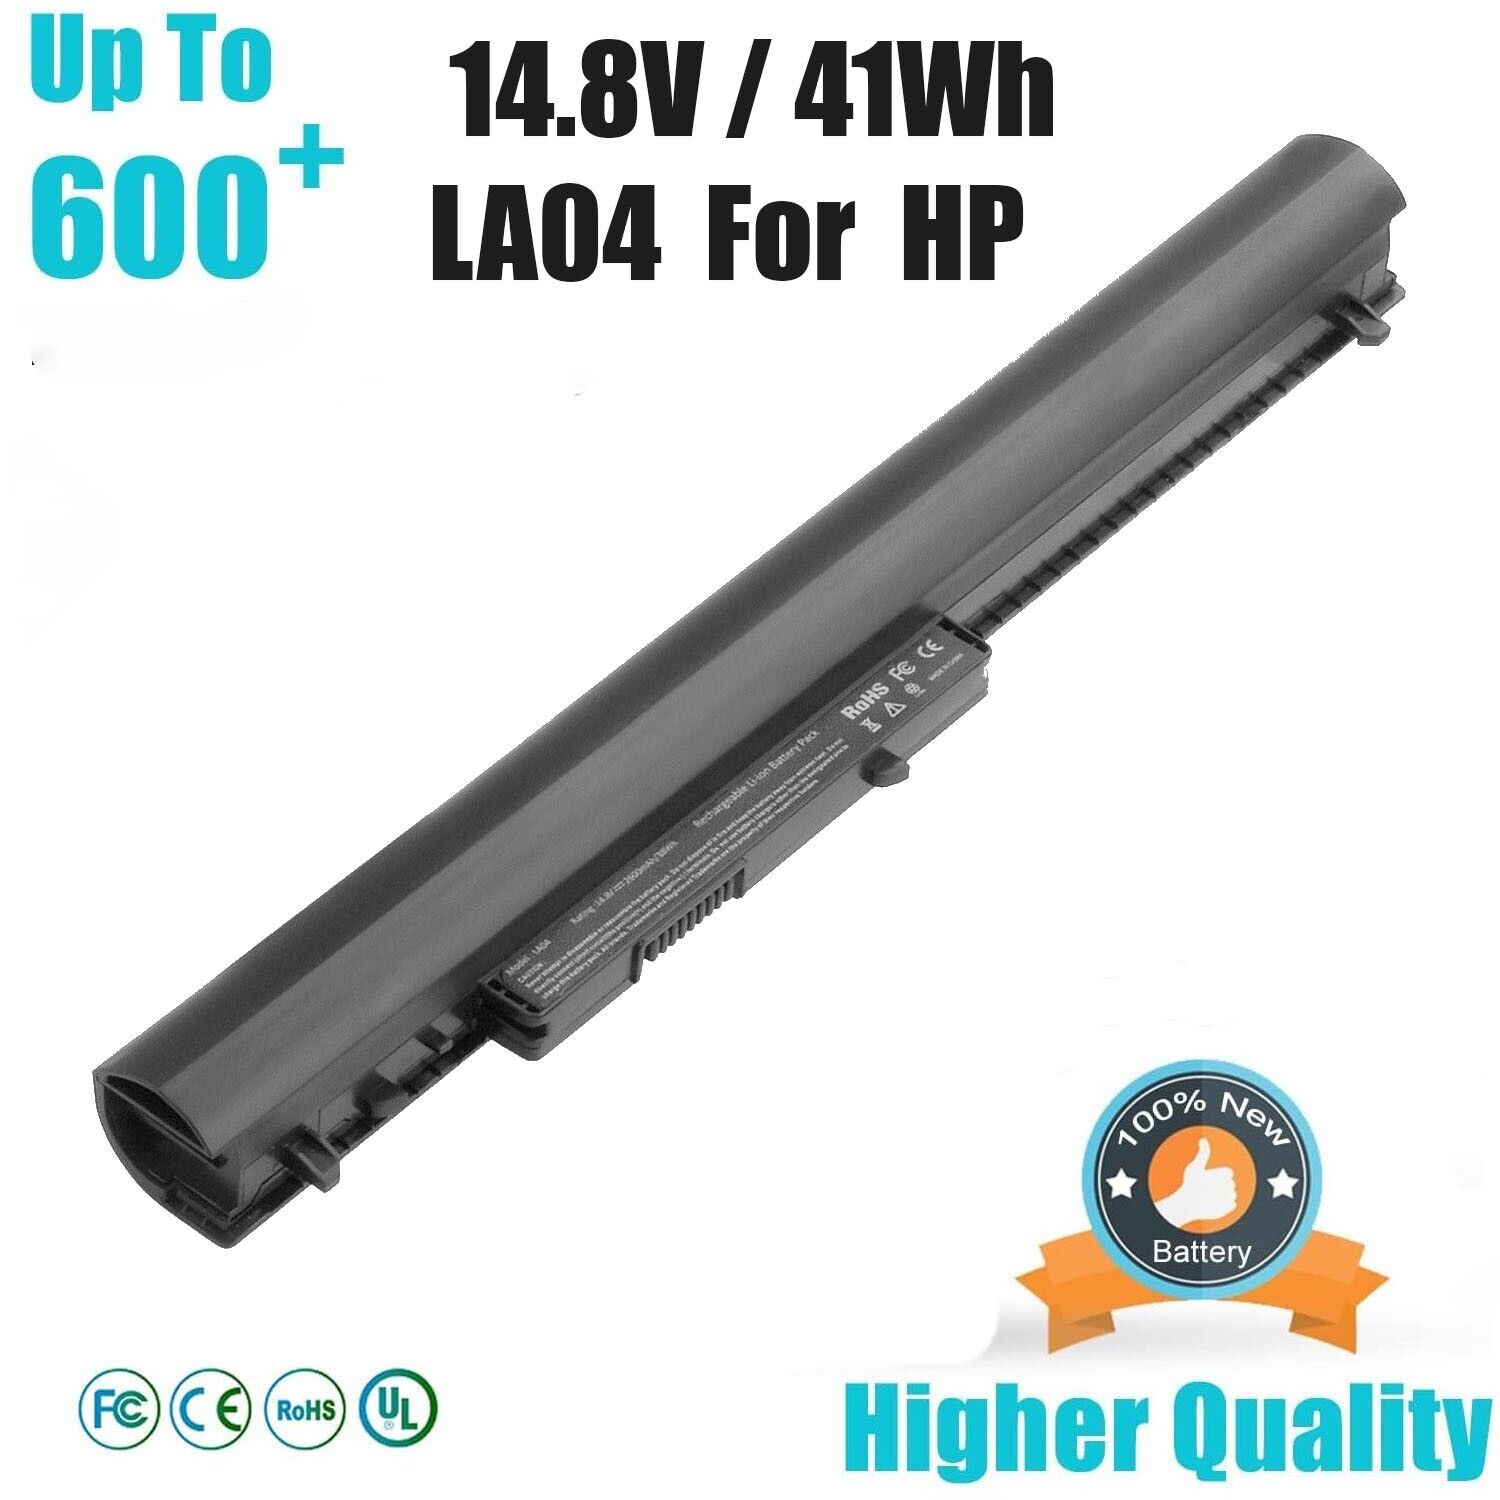 LA04 LA04DF Battery For HP Spare 776622-001 728460-001 752237-001 15-1272WM New